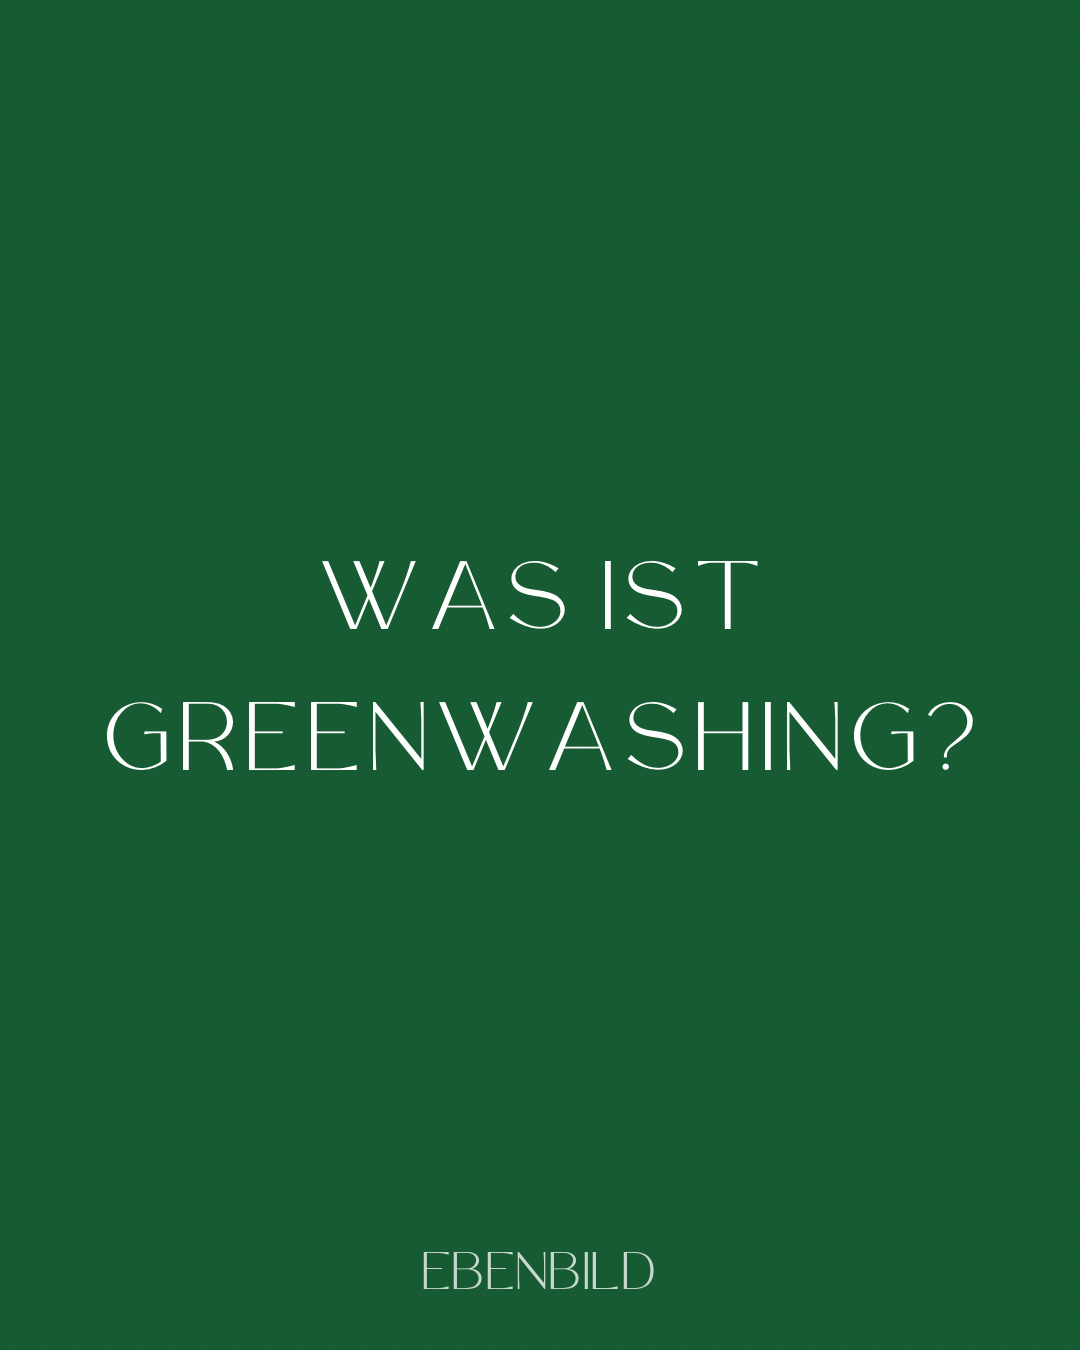 Greenwashing: Was ist das und woran erkennt man es?